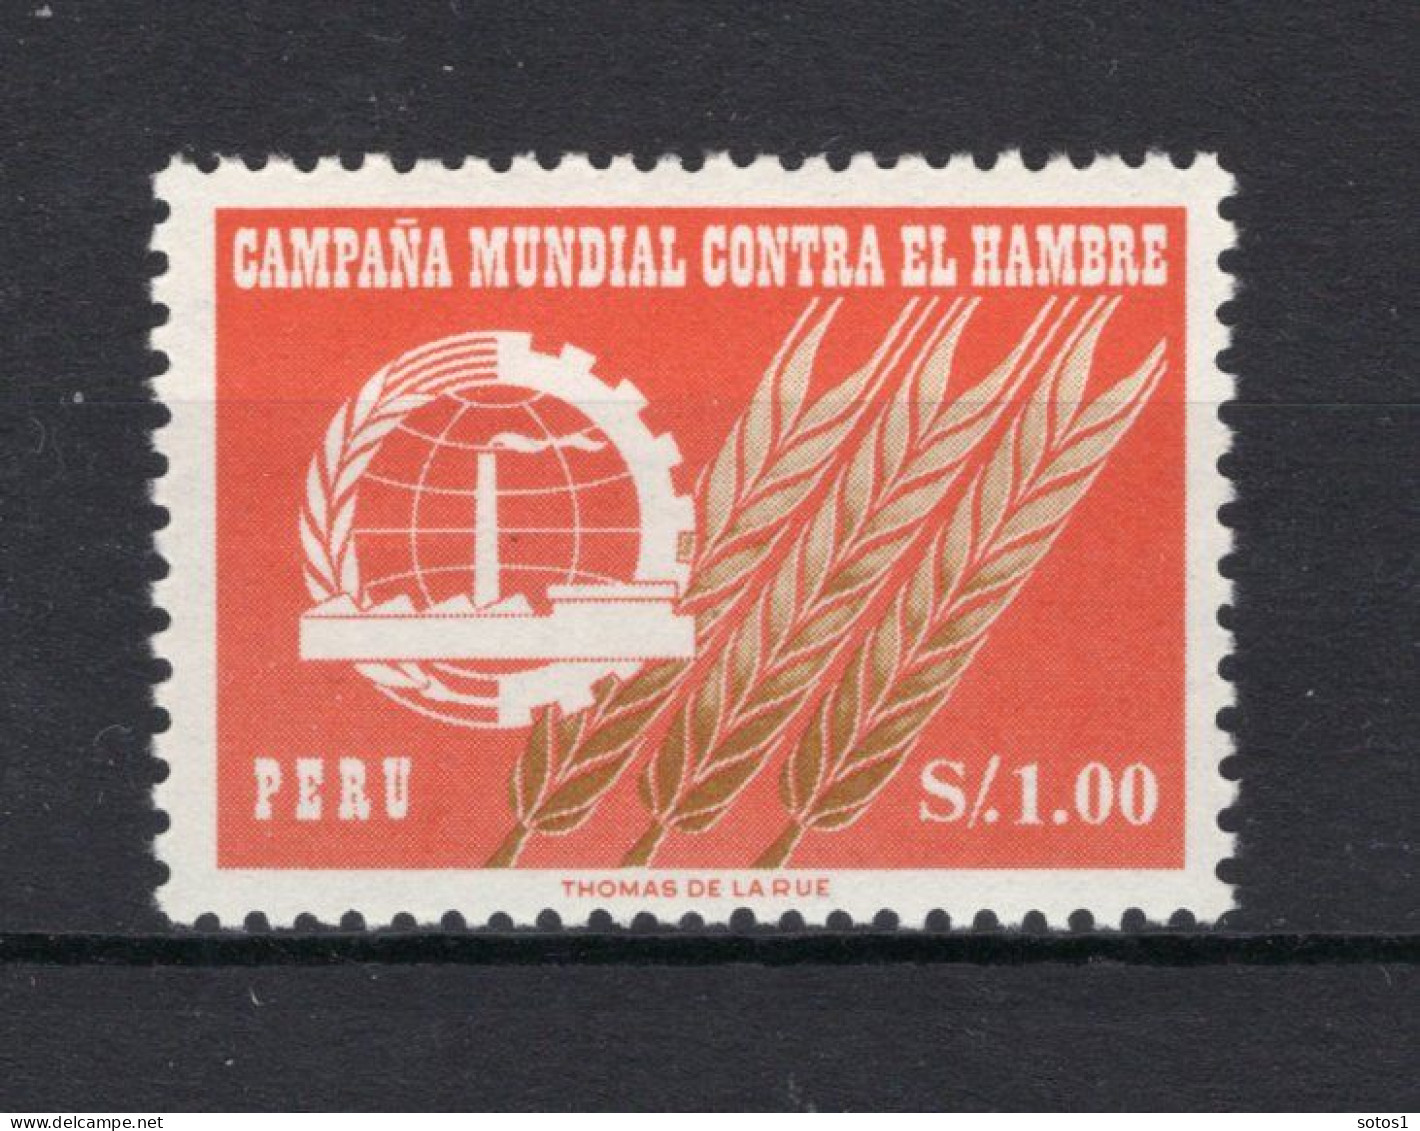 PERU Yt. 464 MNH 1963 - Perù